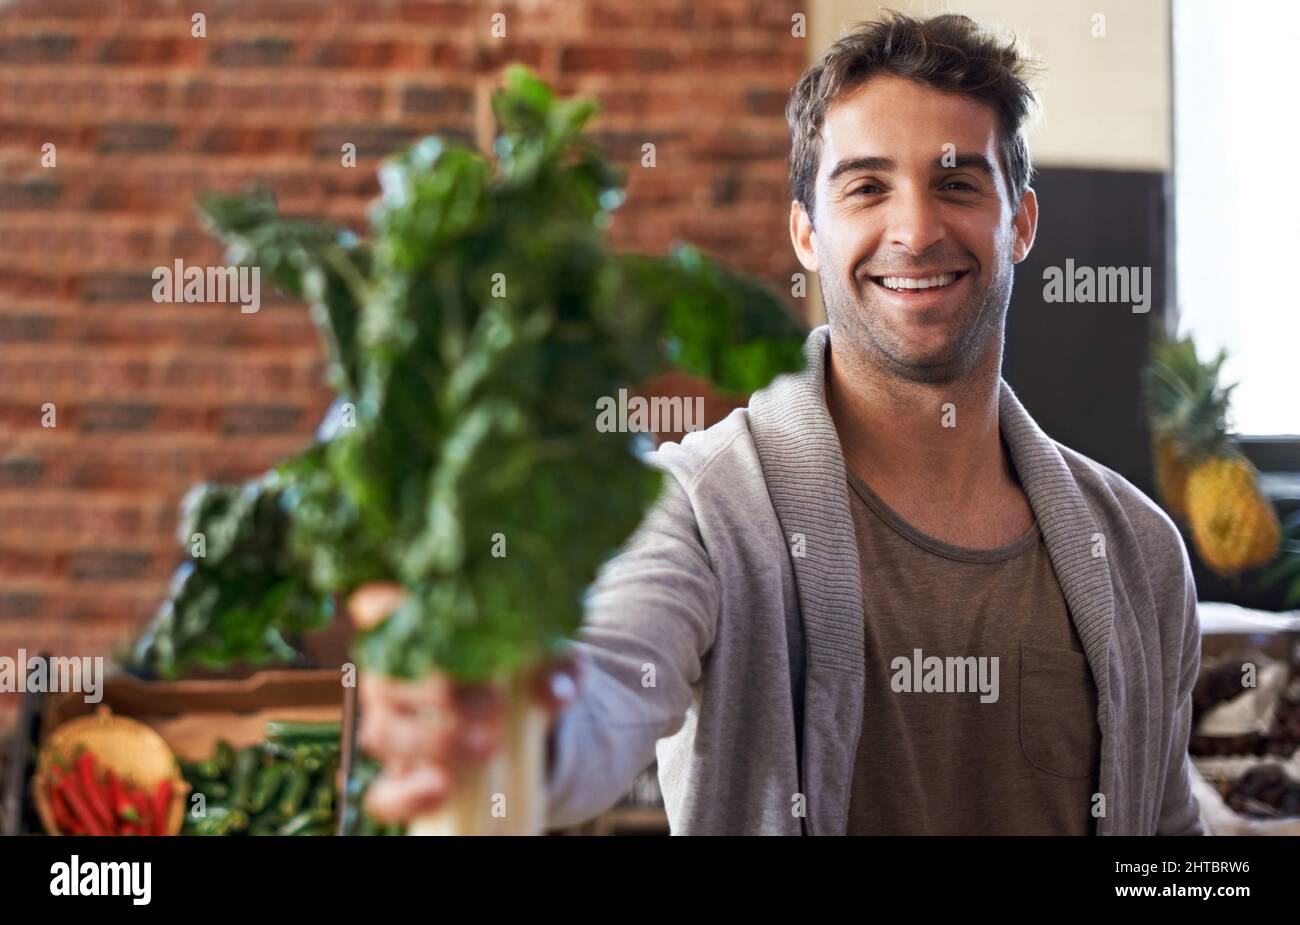 Es ist reich an Eisen. Porträt eines jungen Mannes in einem Lebensmittelgeschäft, der Spinat vor die Kamera hält. Stockfoto